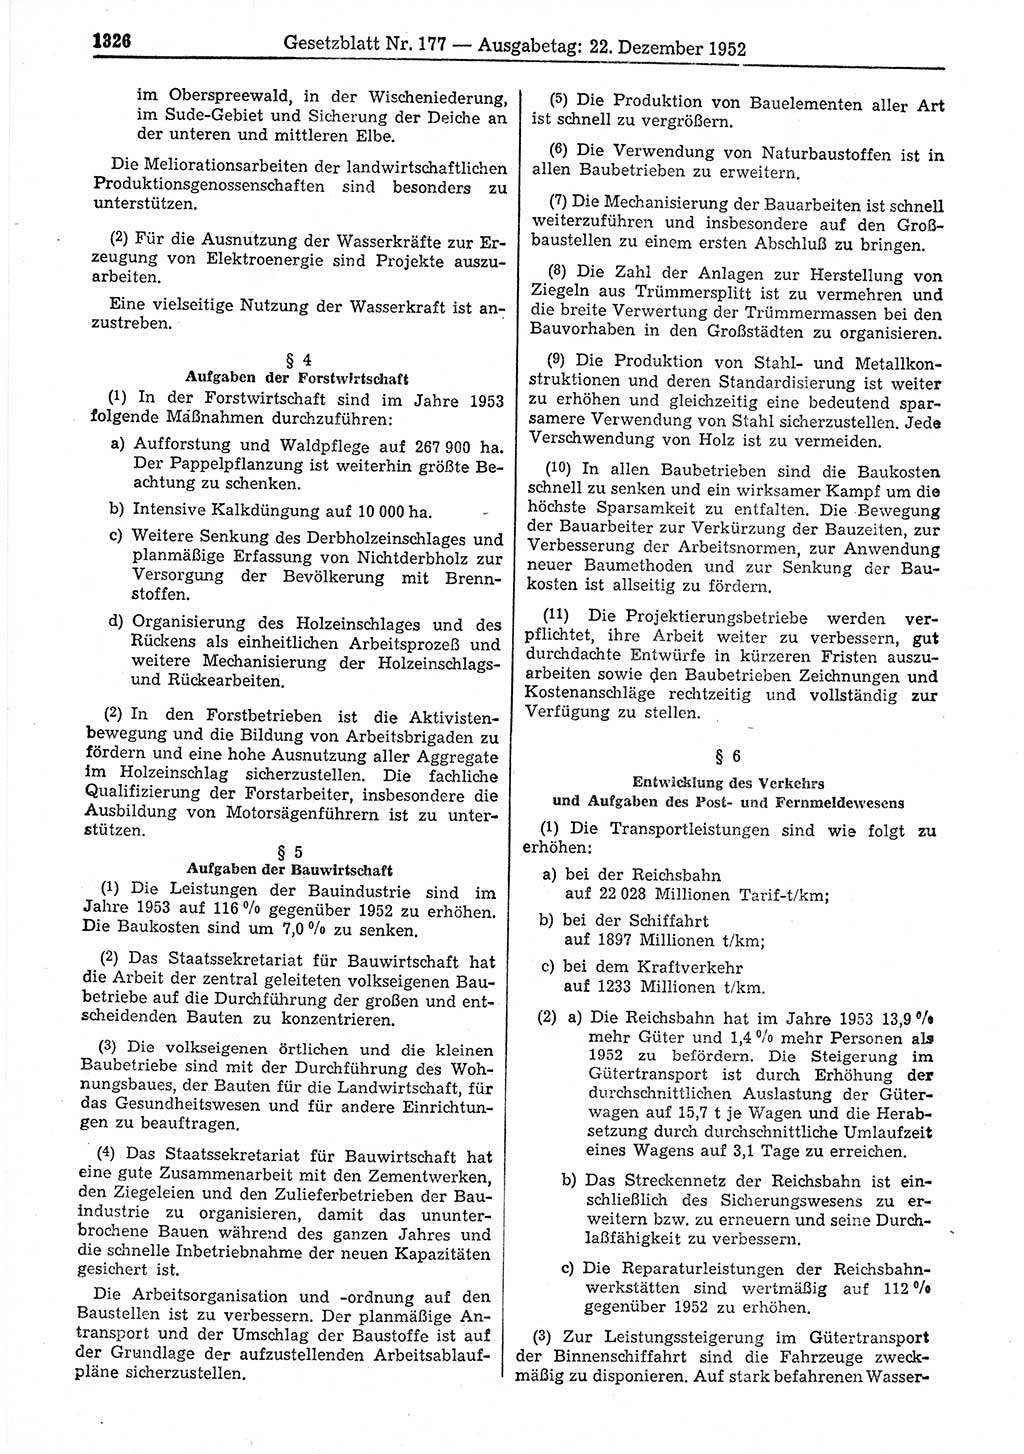 Gesetzblatt (GBl.) der Deutschen Demokratischen Republik (DDR) 1952, Seite 1326 (GBl. DDR 1952, S. 1326)